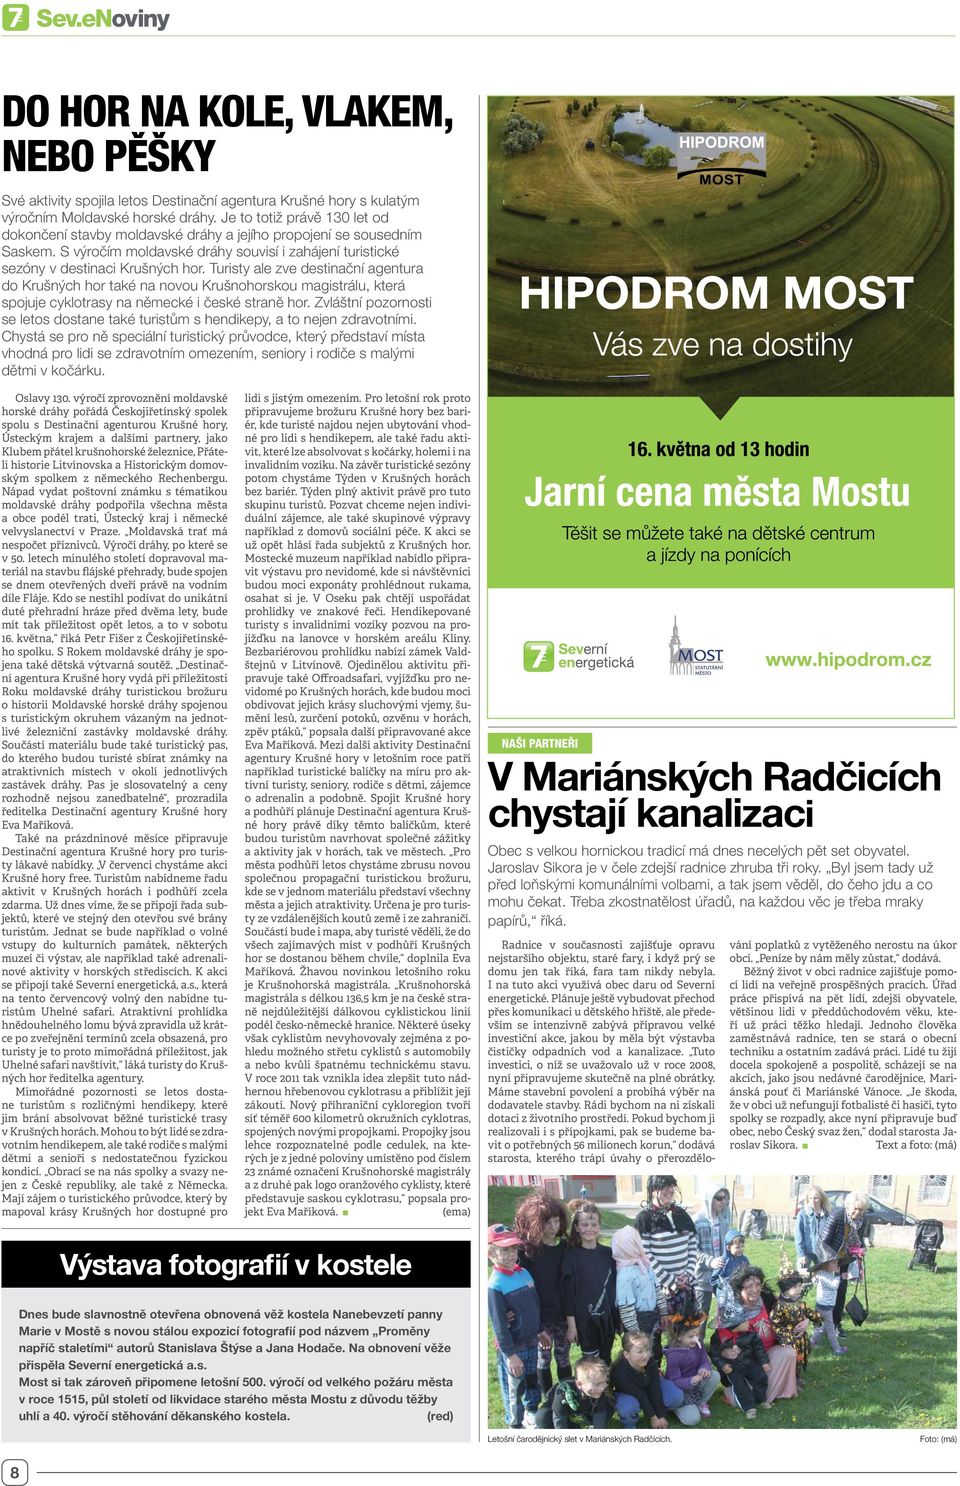 Turisty ale zve destinační agentura do Krušných hor také na novou Krušnohorskou magistrálu, která spojuje cyklotrasy na německé i české straně hor.